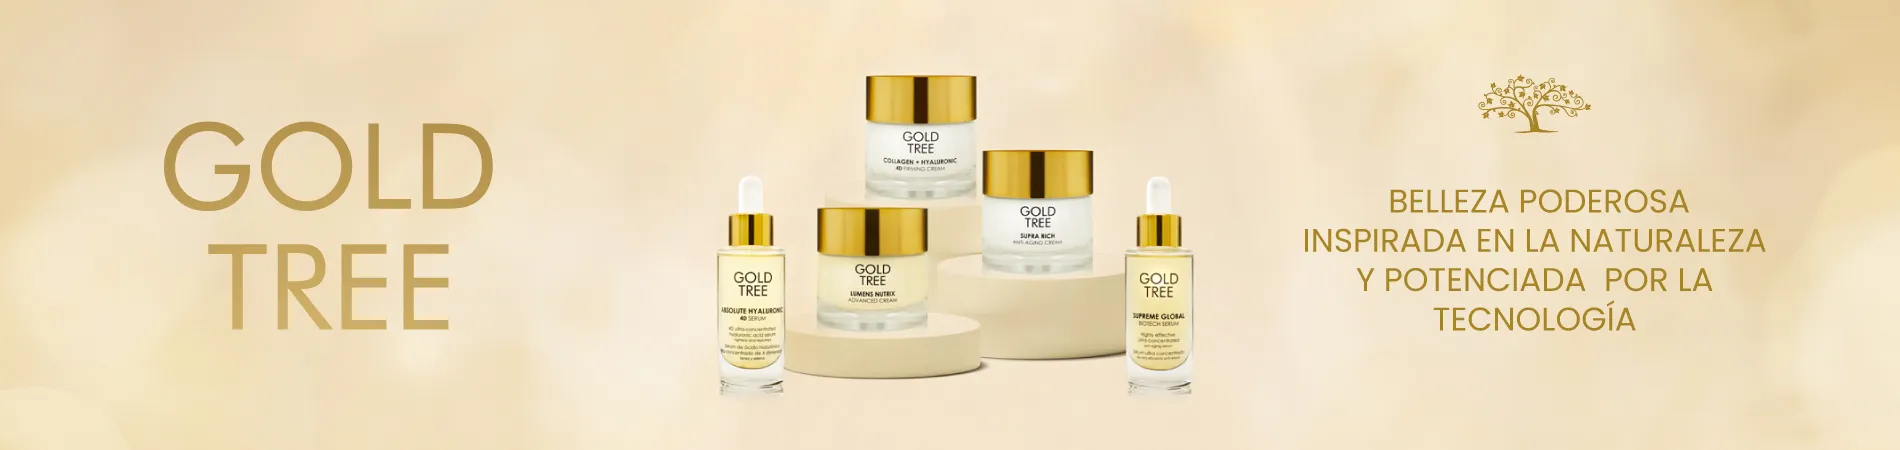 Cosmética Gold Tree, Productos inspirados en la naturaleza y potenciada por la tecnología en Perfumerías de la Uz